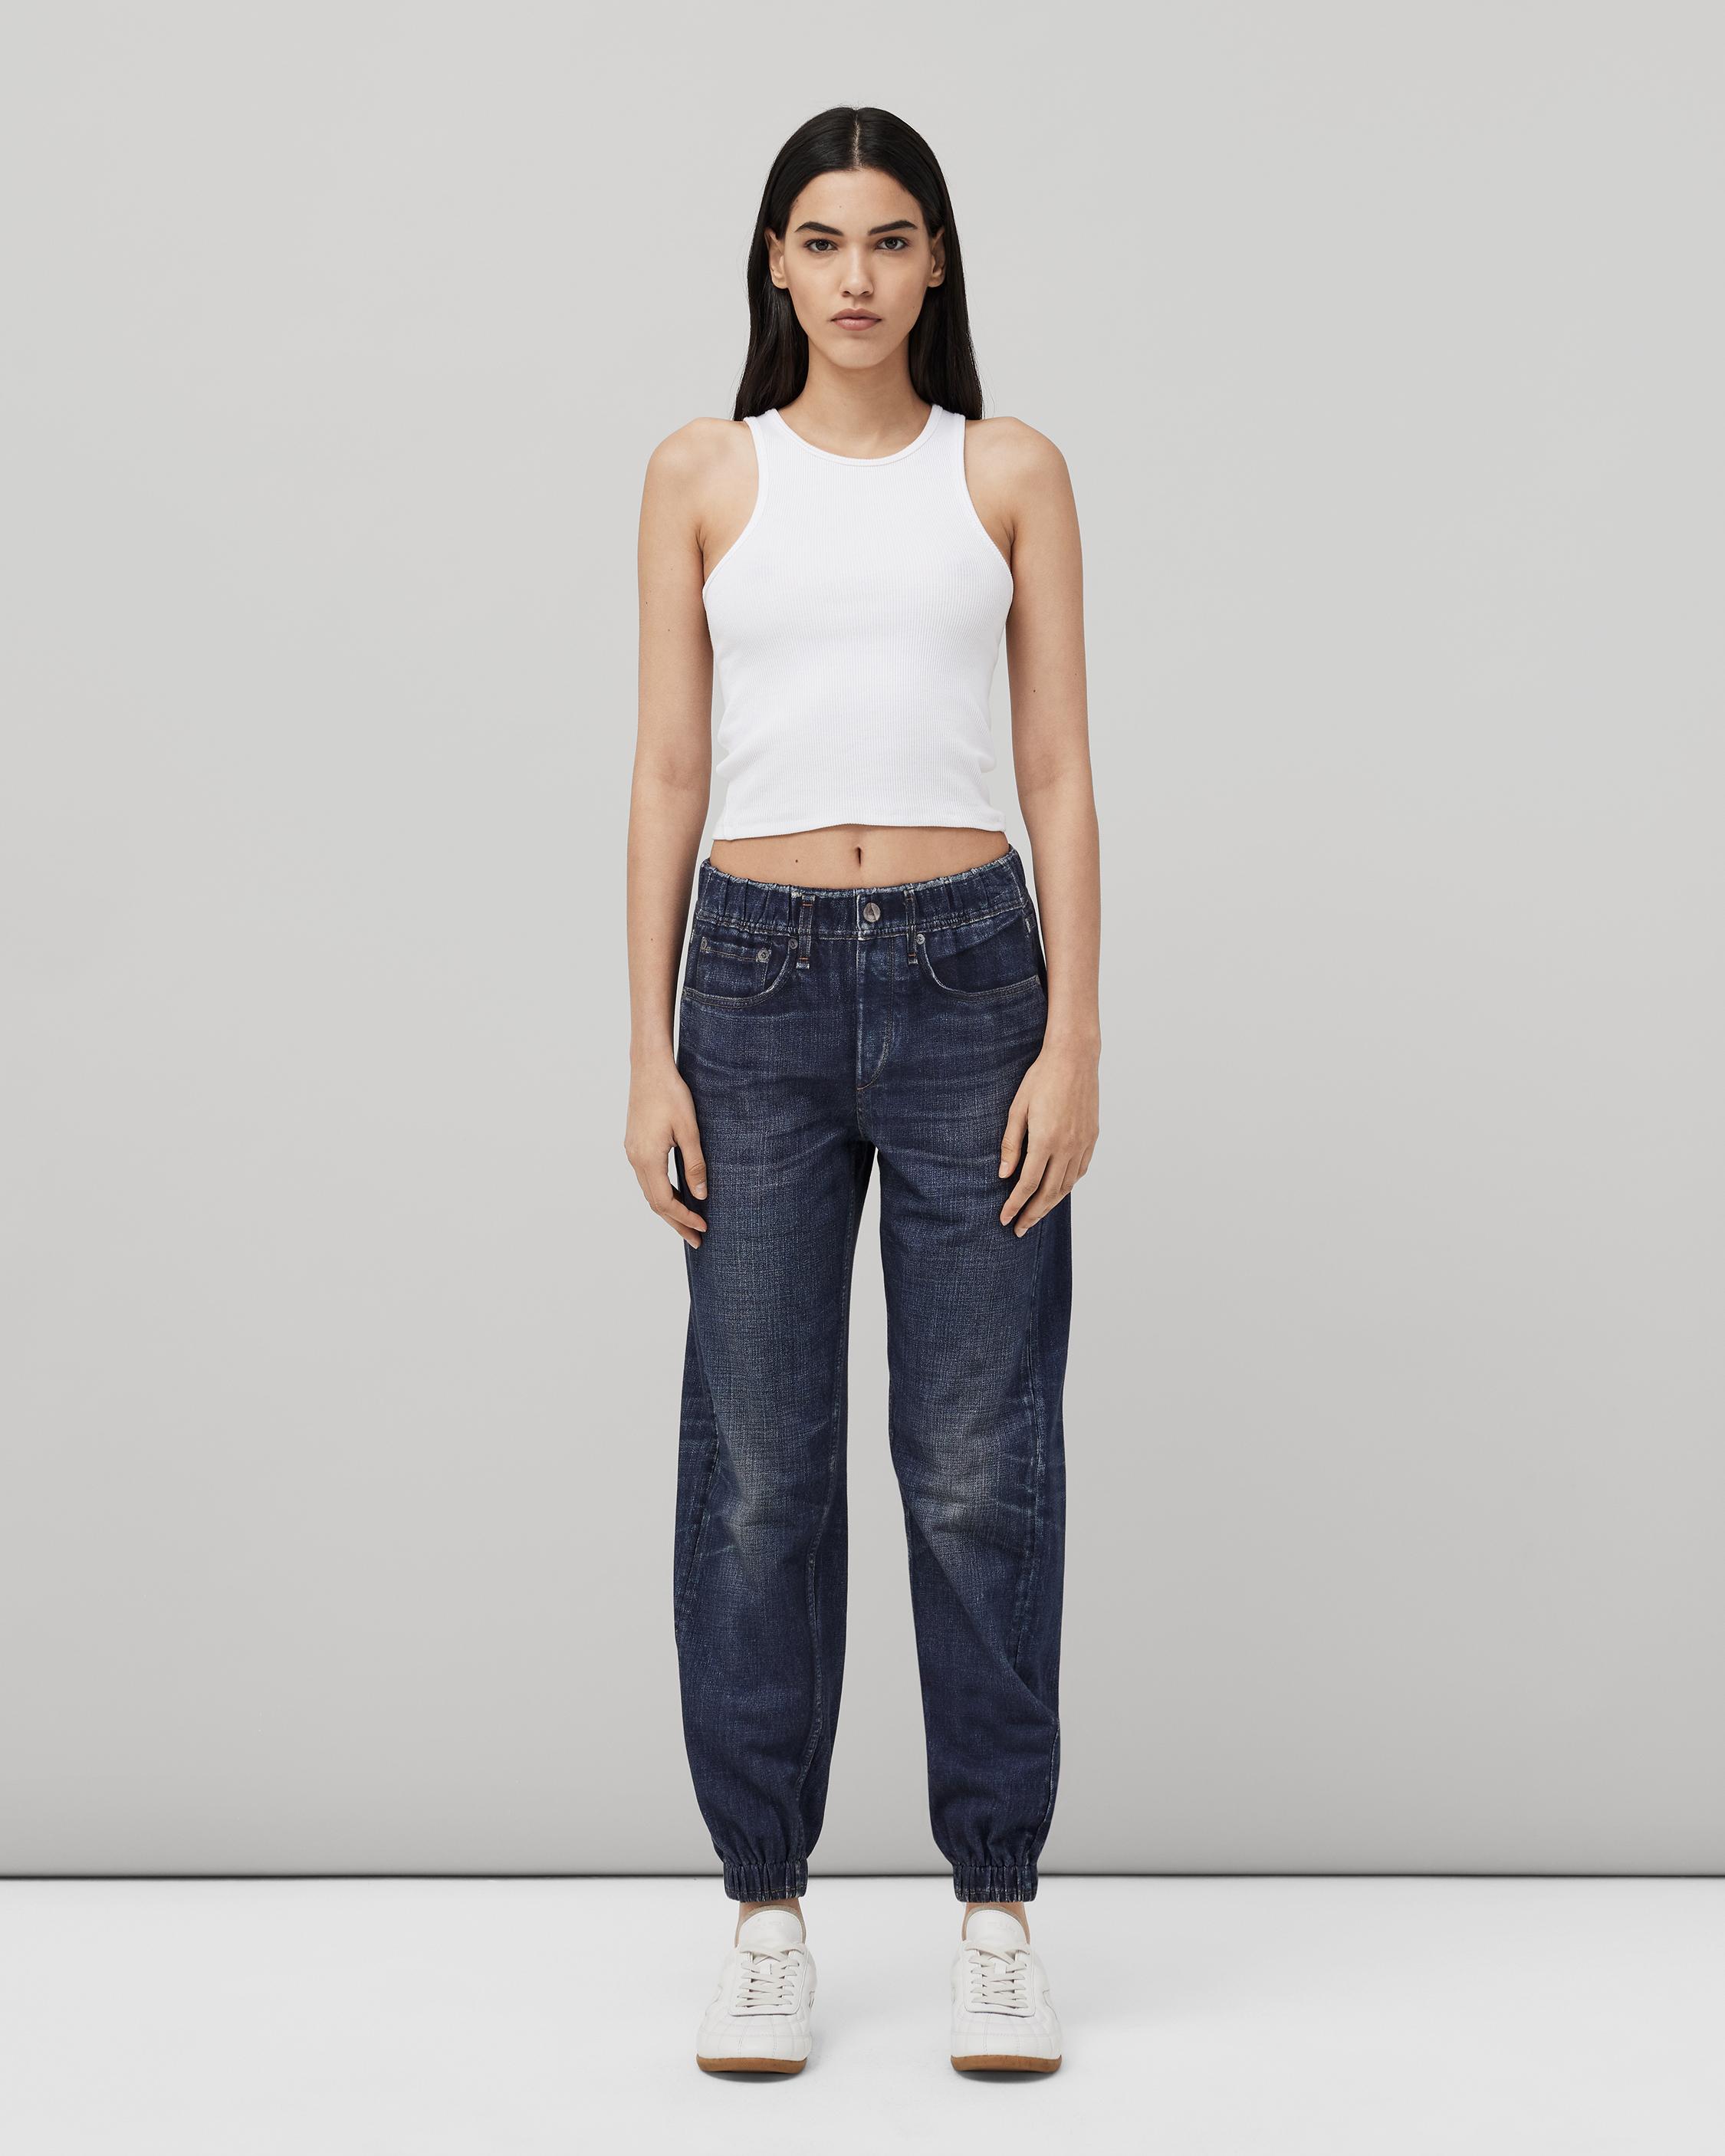 Miramar Jogger Sweatpants, Printed to Look like Denim Jeans